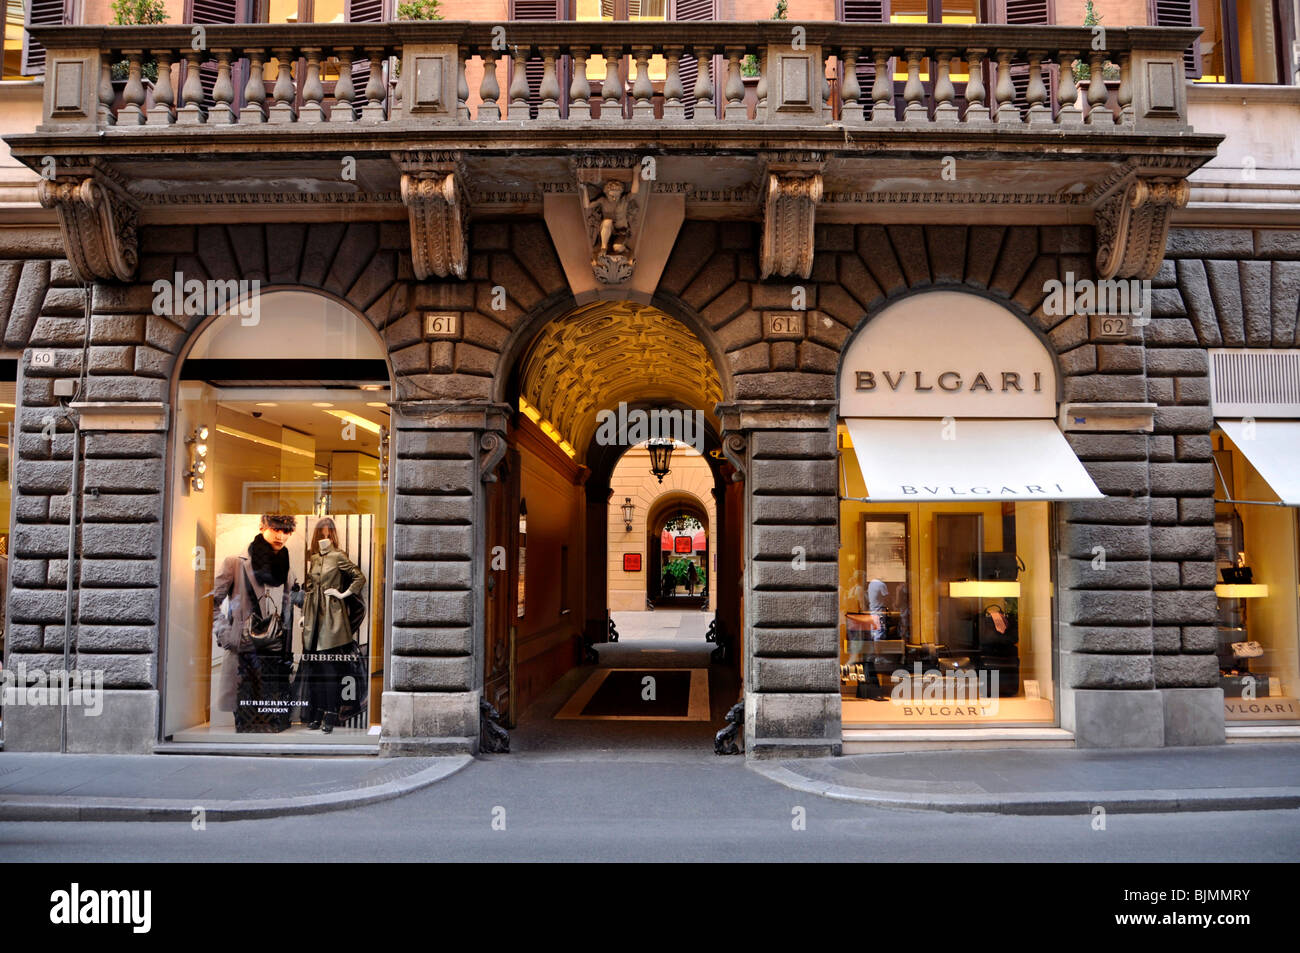 Burberry tienda de moda, joyería Bulgari, Via dei Condotti, Roma, Lazio,  Italia, Europa Fotografía de stock - Alamy